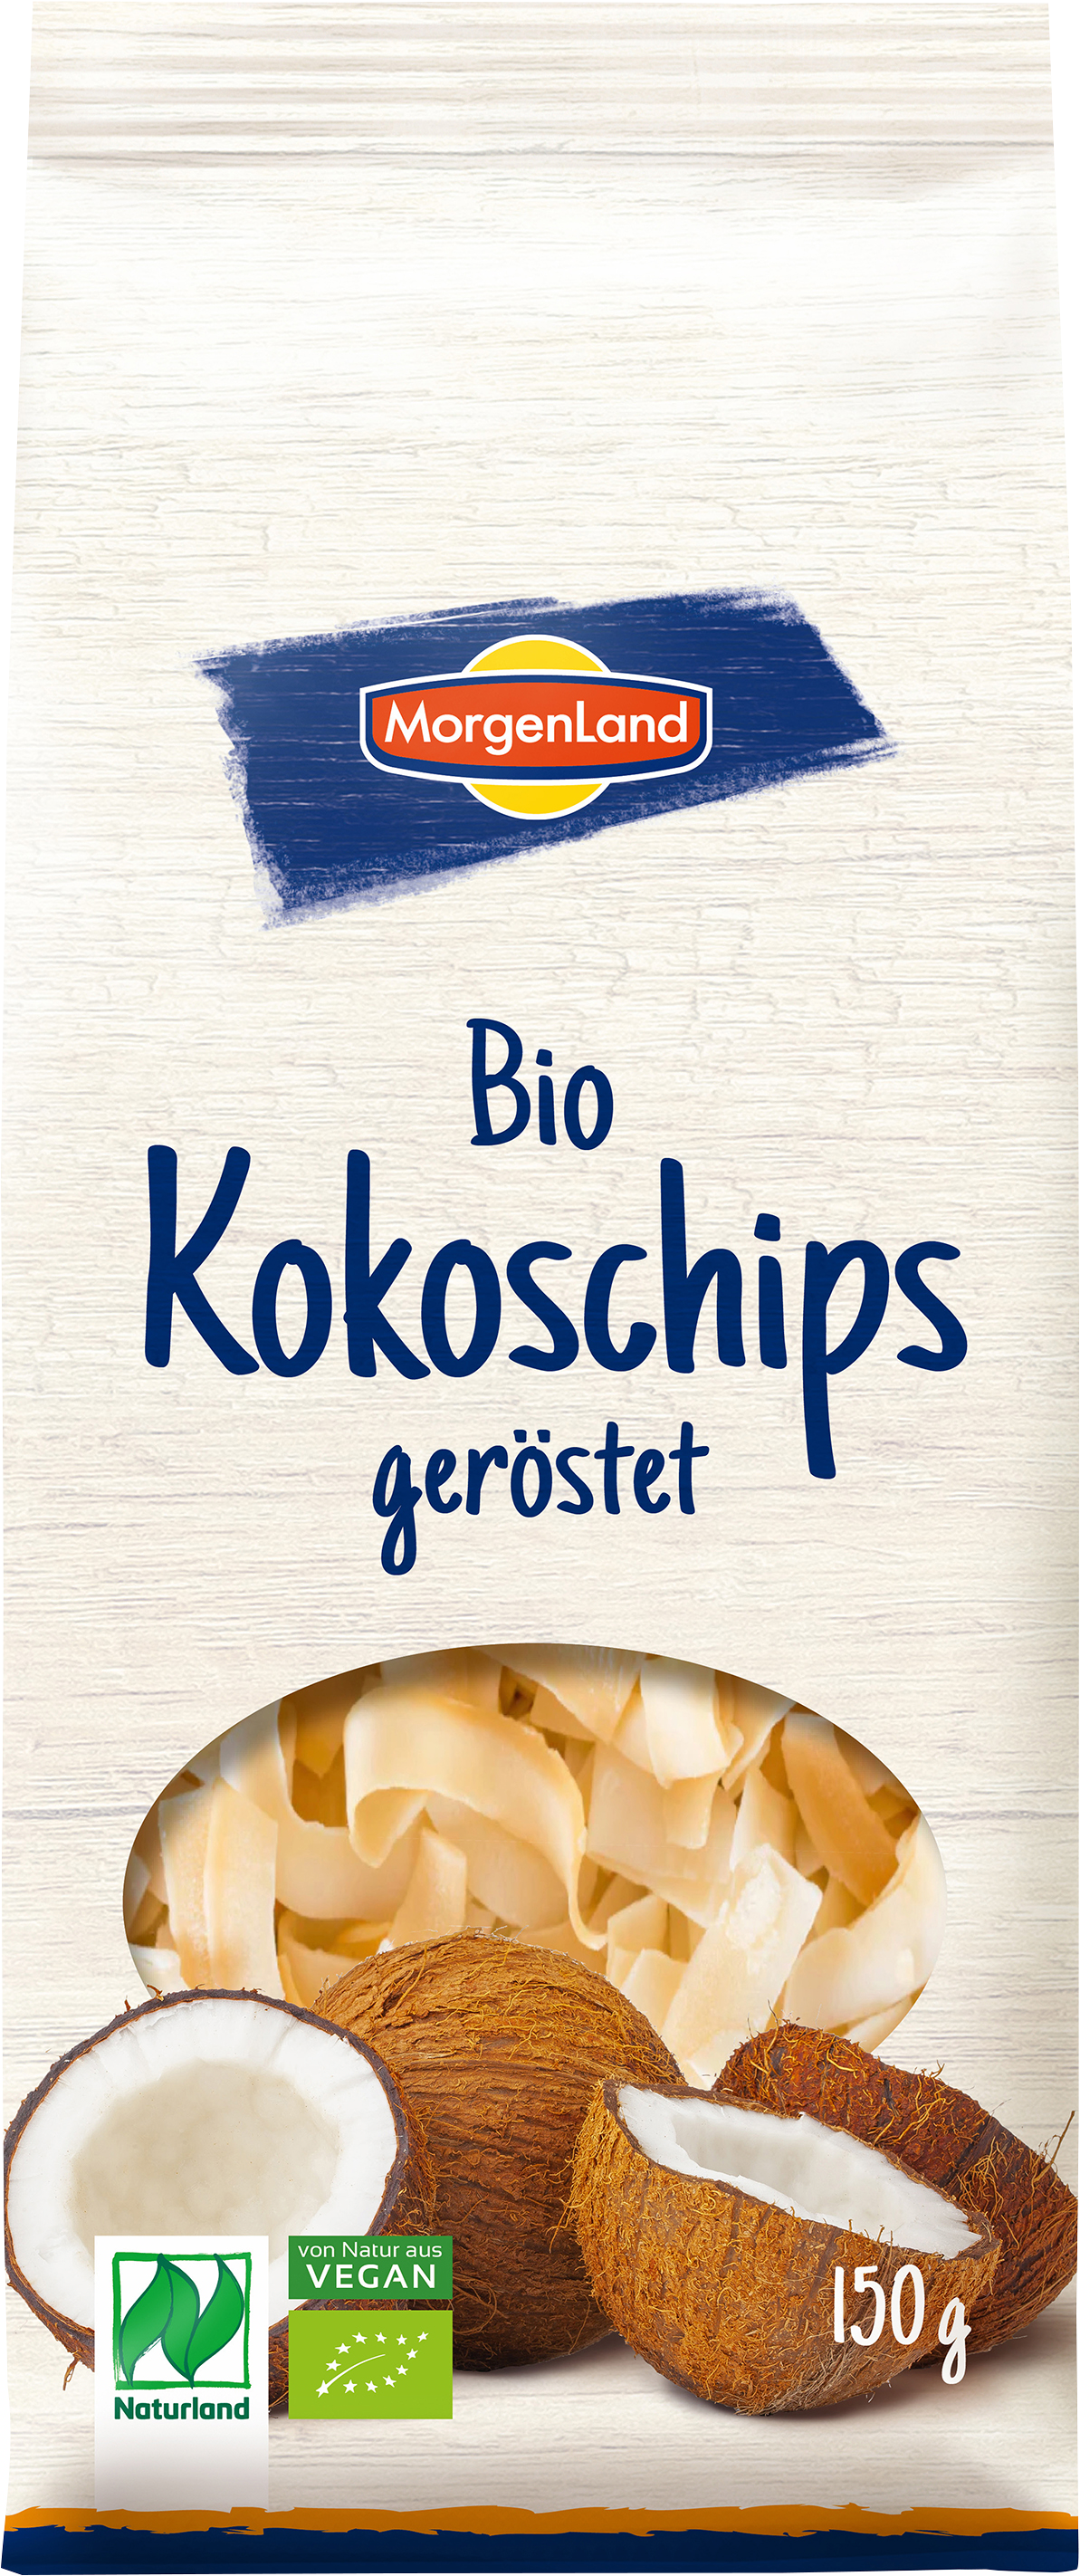 MorgenLand Kokoschips geröstet 150g/nl